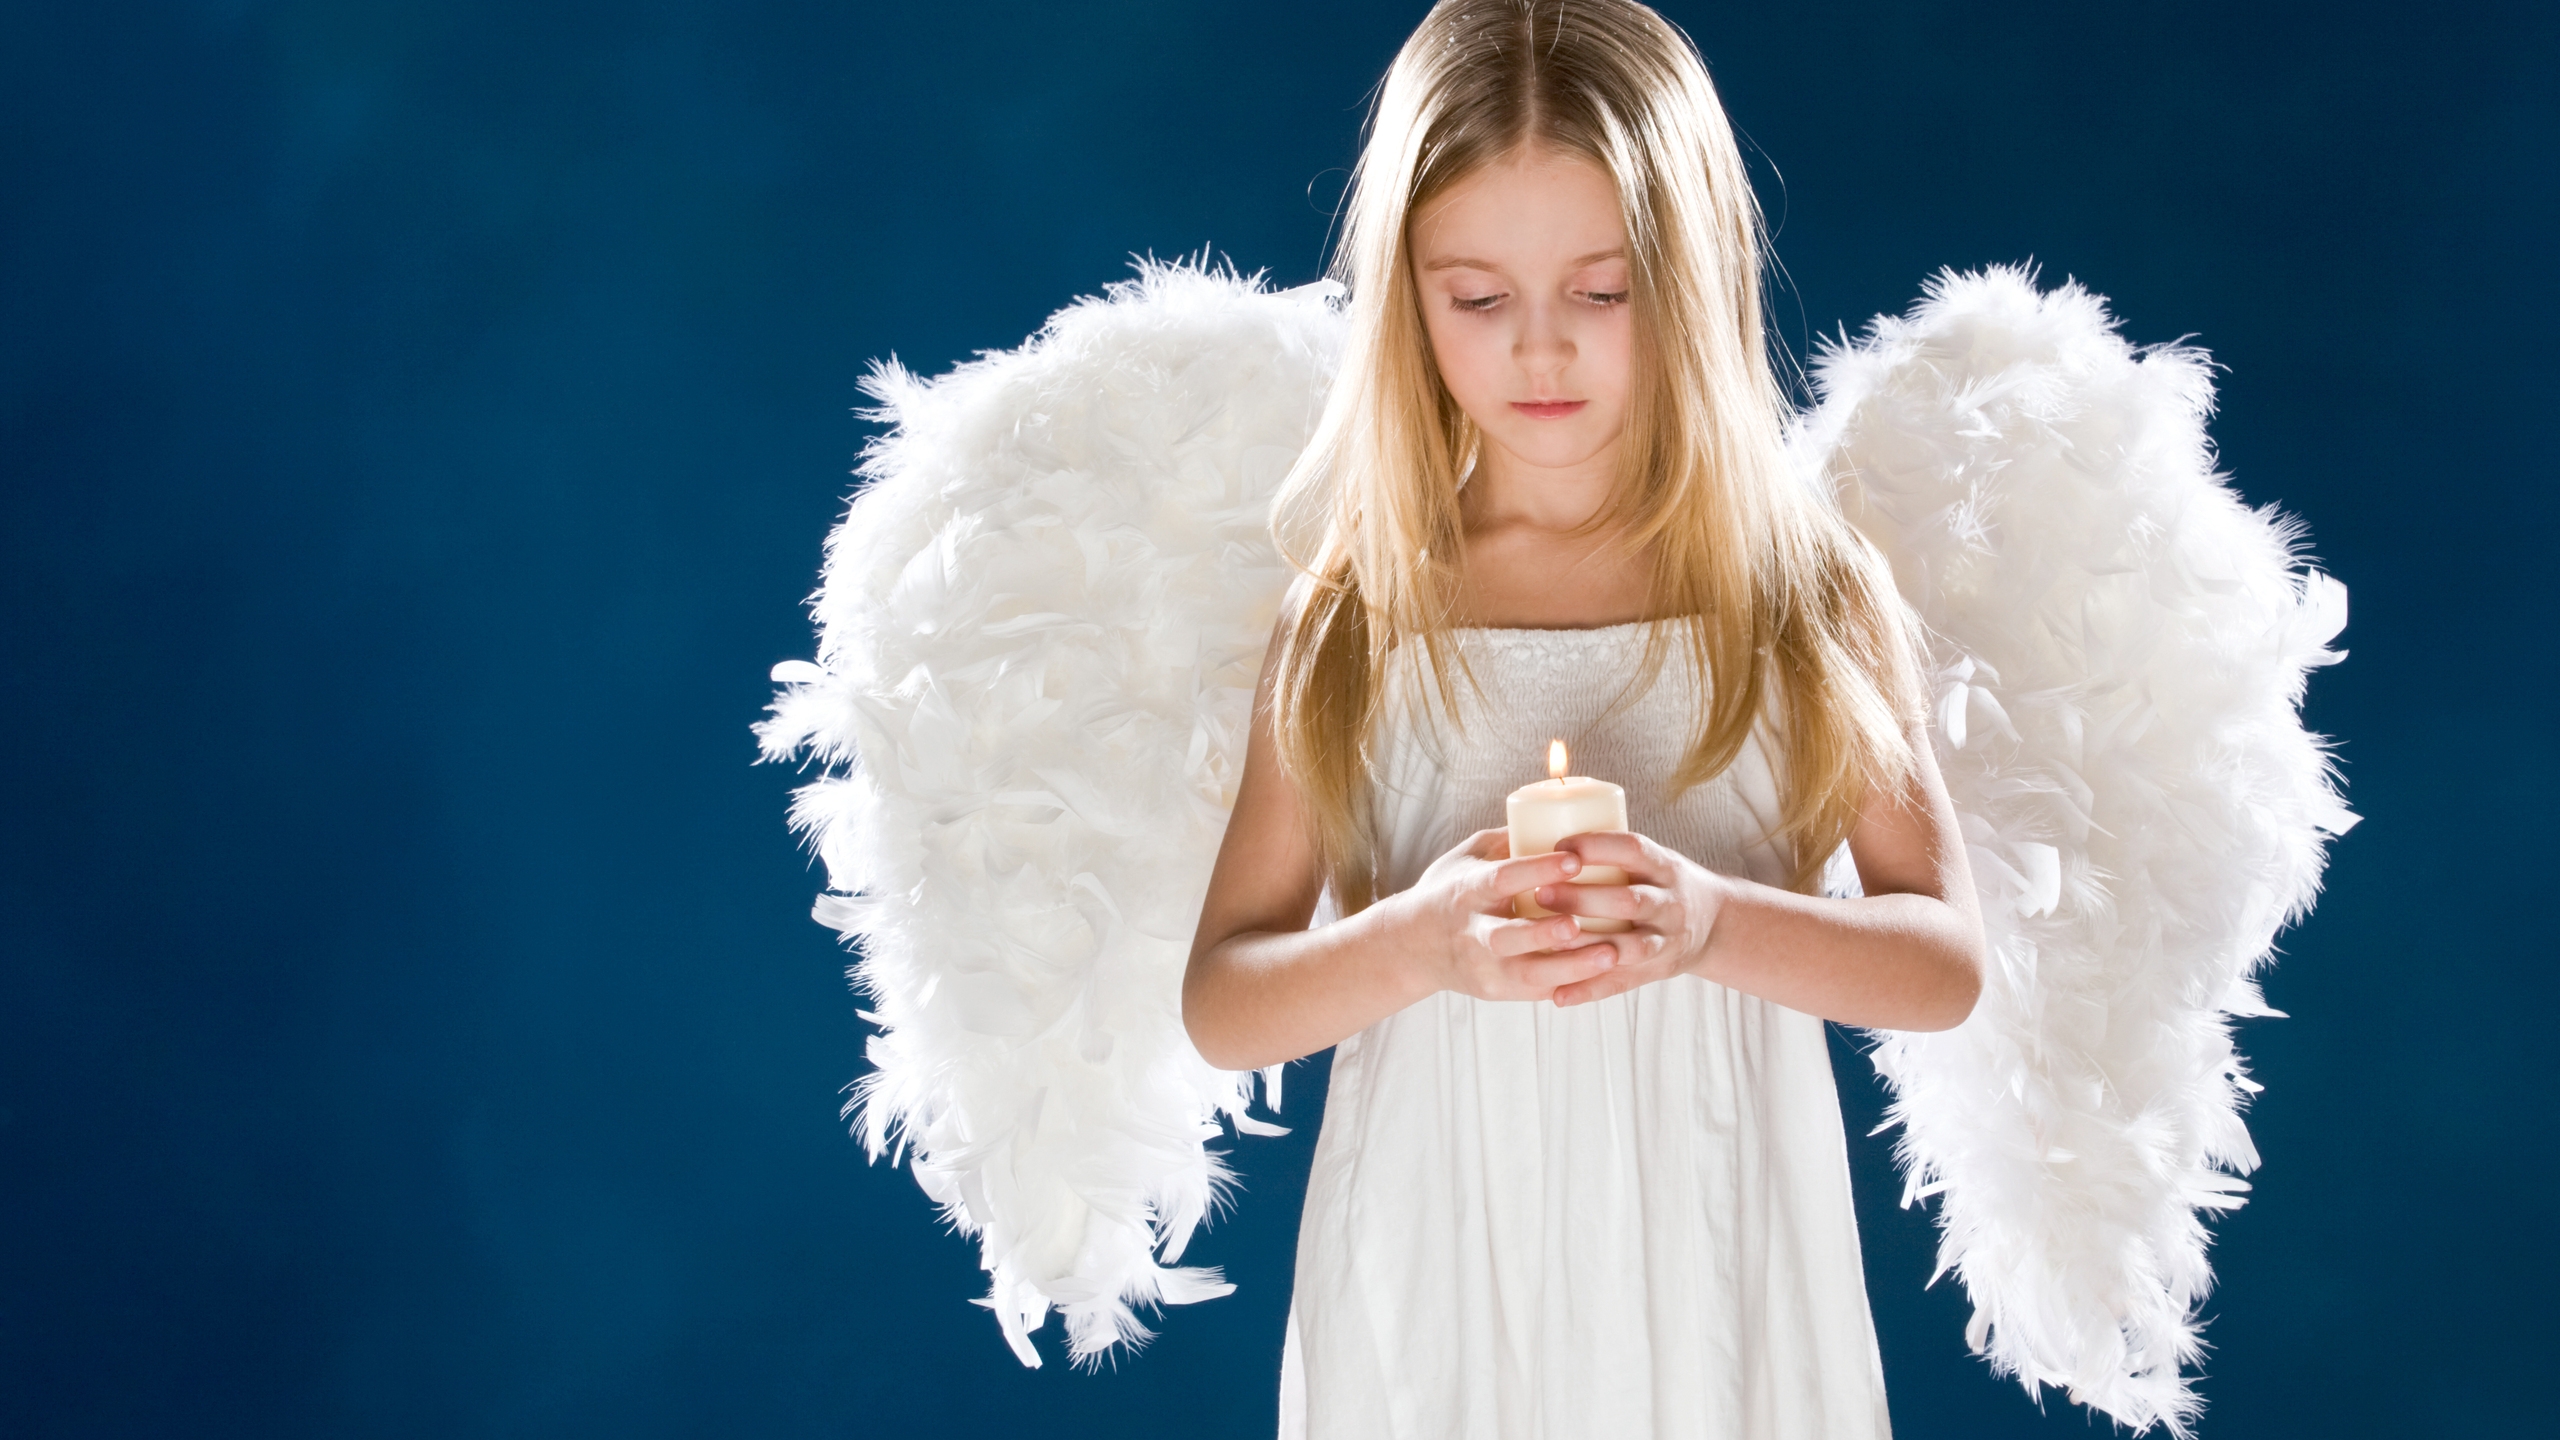 Little Angel Girl for 2560x1440 HDTV resolution